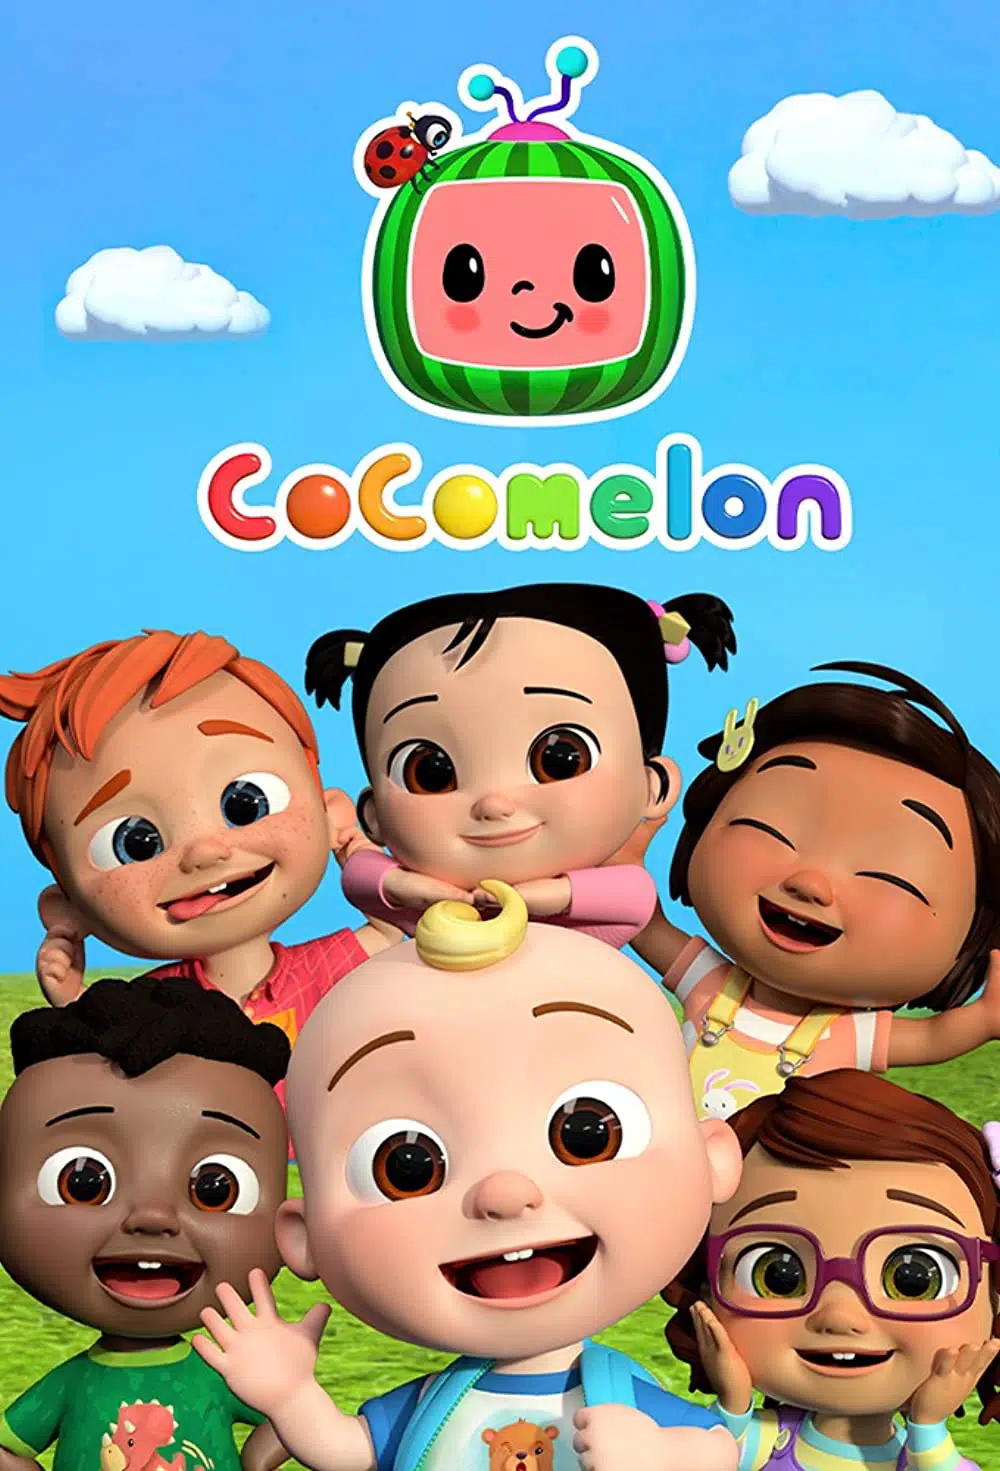 Anak ‘Ketagih’ Layan Animasi Cocomelon Setiap Hari? Pakar Dedah Realiti Gelap